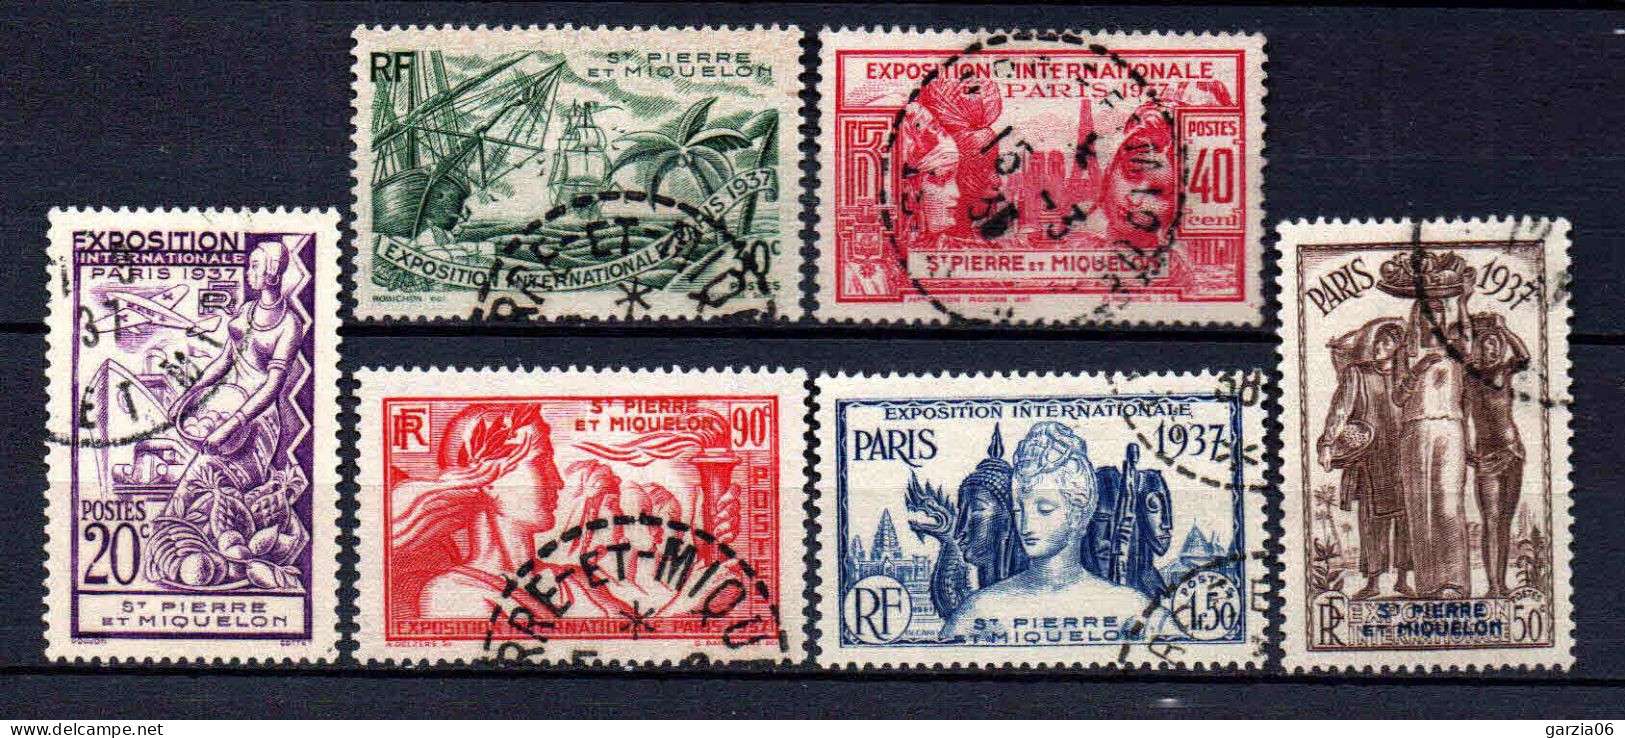 St Pierre Et Miquelon - 1937 - Exposition Internationale De Paris - N° 160 à 165 - Oblit - Used - Oblitérés